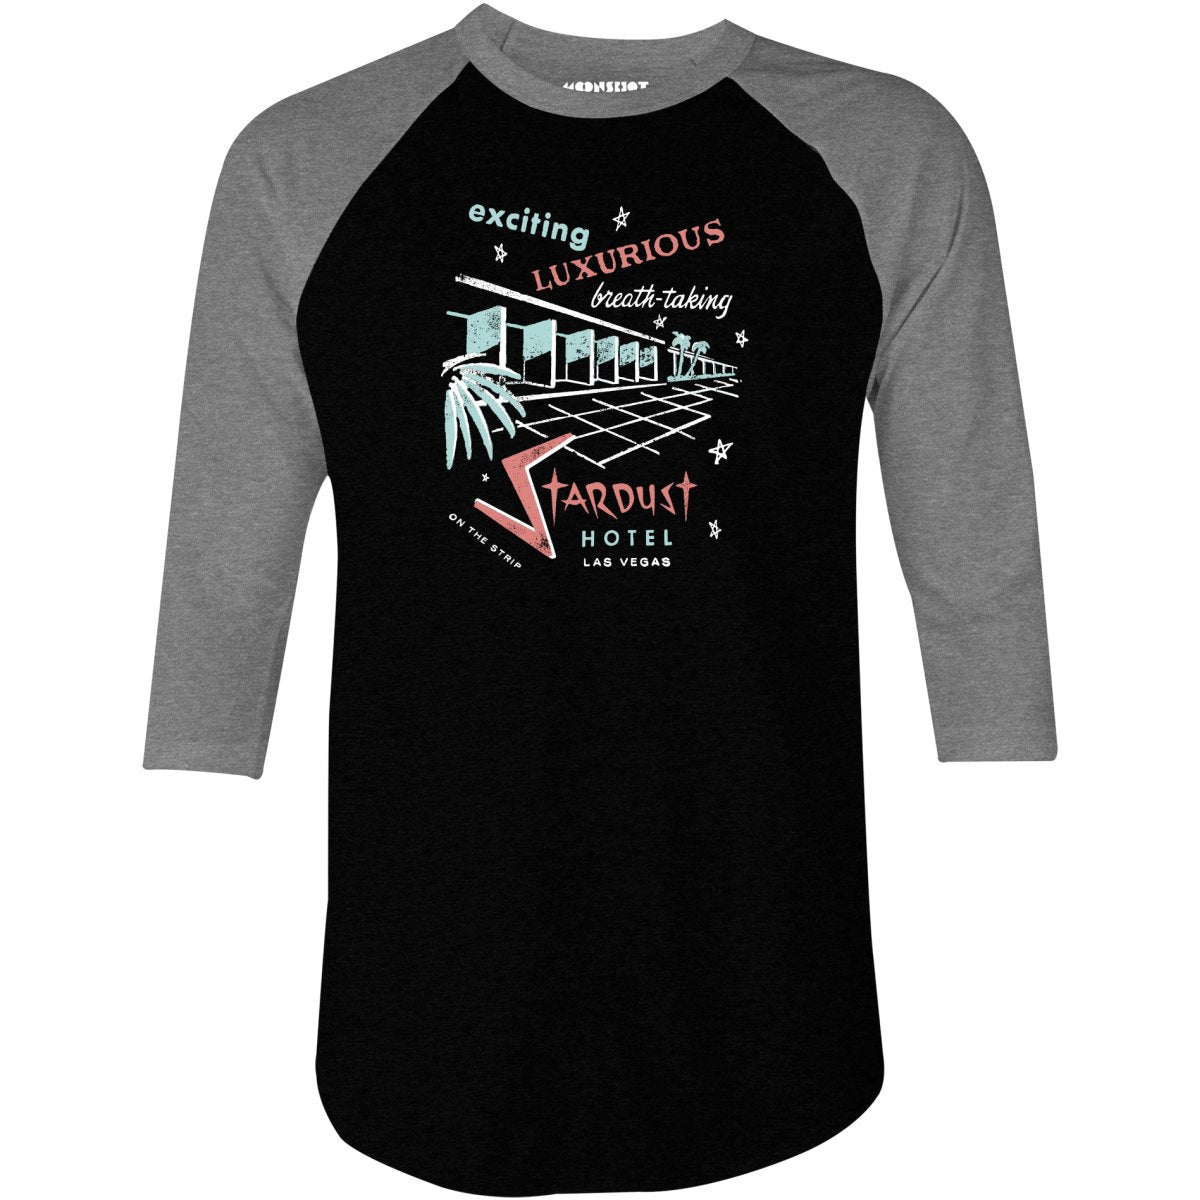 Stardust Hotel - Vintage Las Vegas - 3/4 Sleeve Raglan T-Shirt